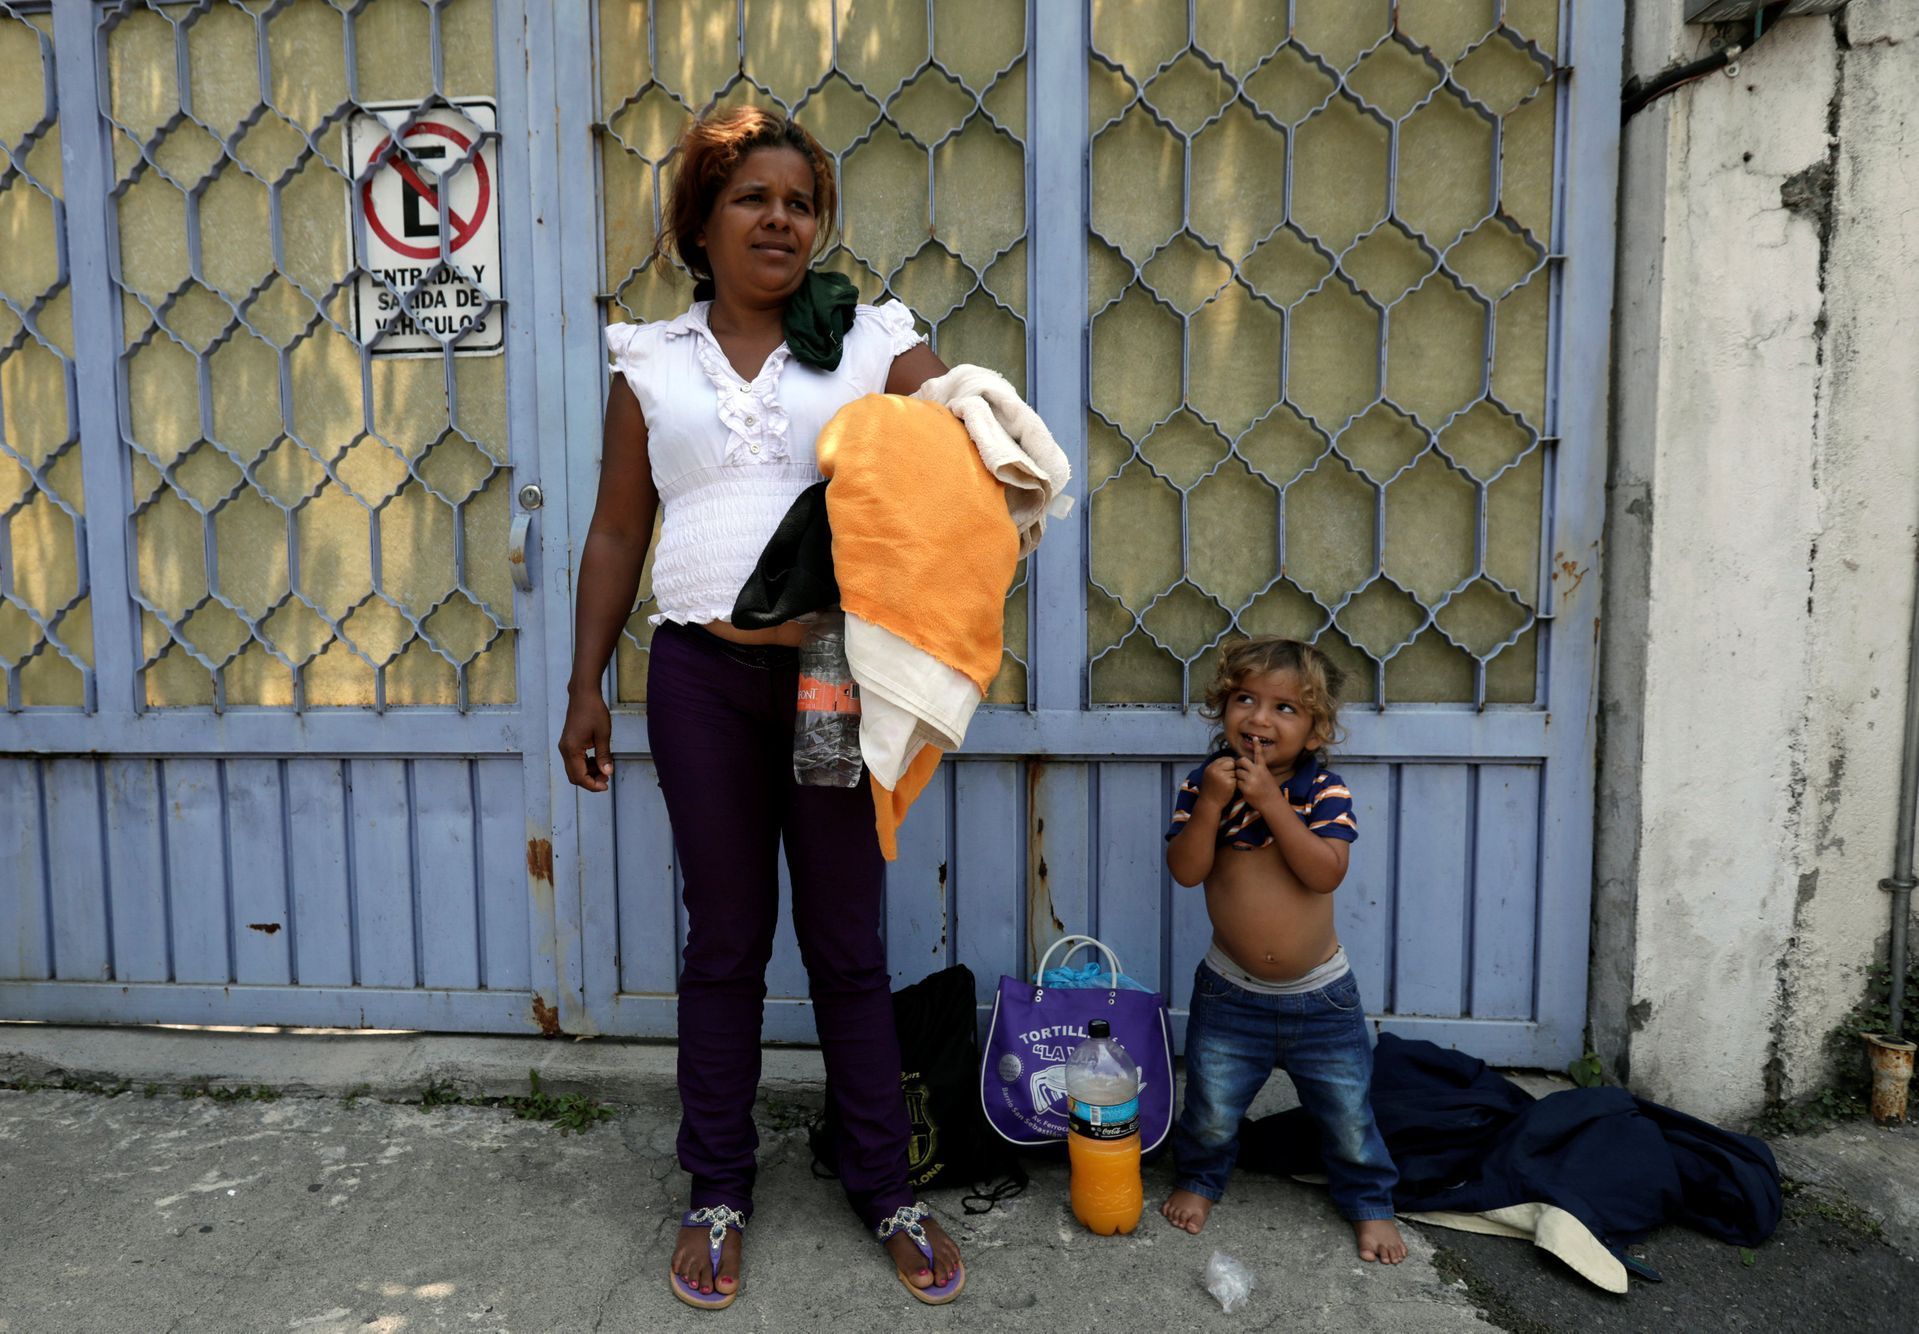 Matka se svým dítětem. Právě v rámci karavany přijeli do Mexika.